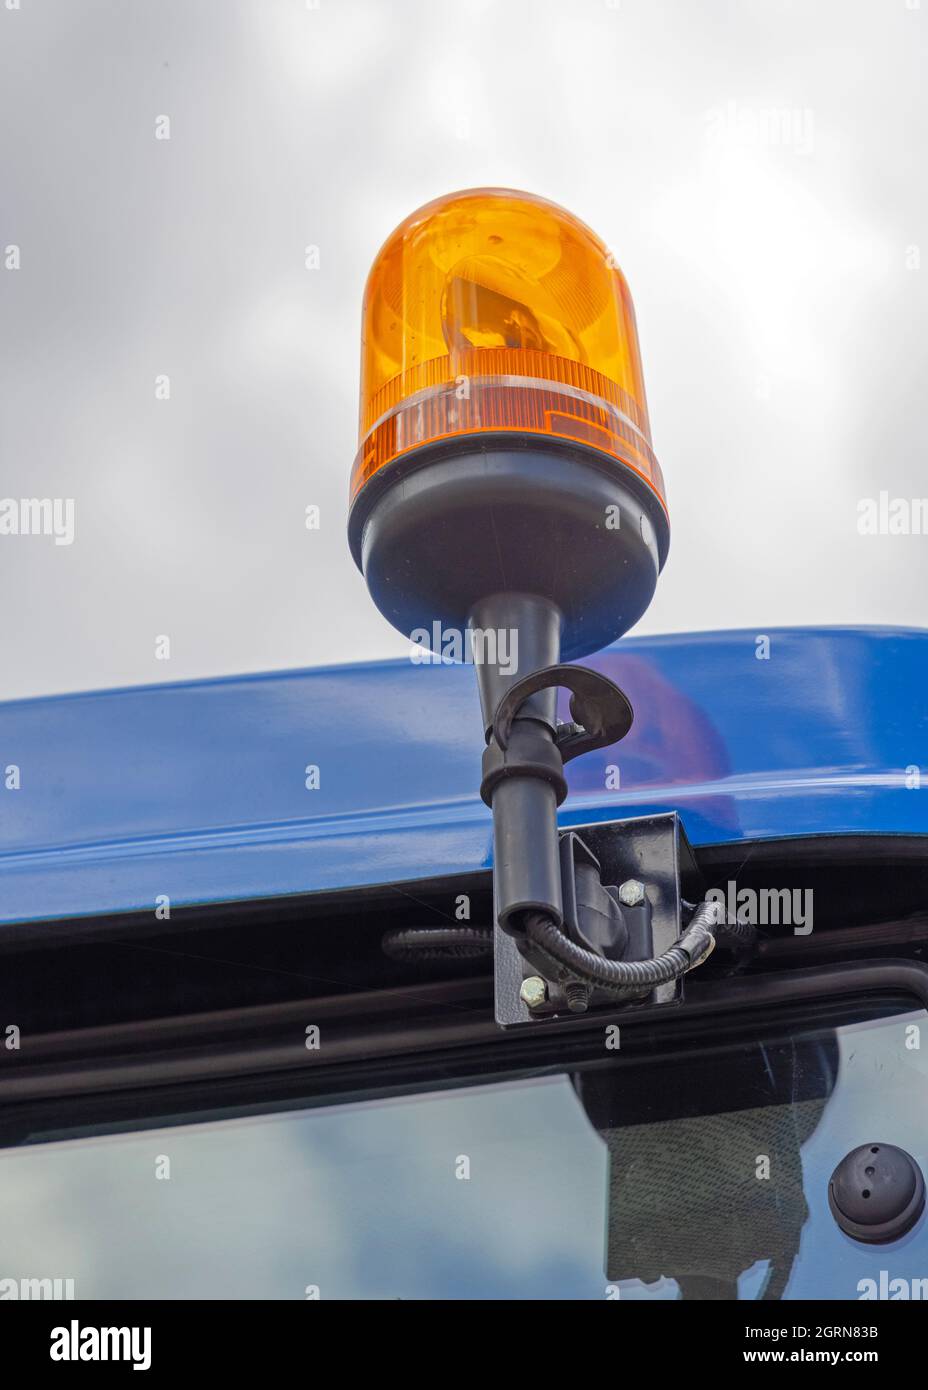 Plafonnier orange rotatif en haut de la cabine de sécurité du tracteur  Photo Stock - Alamy